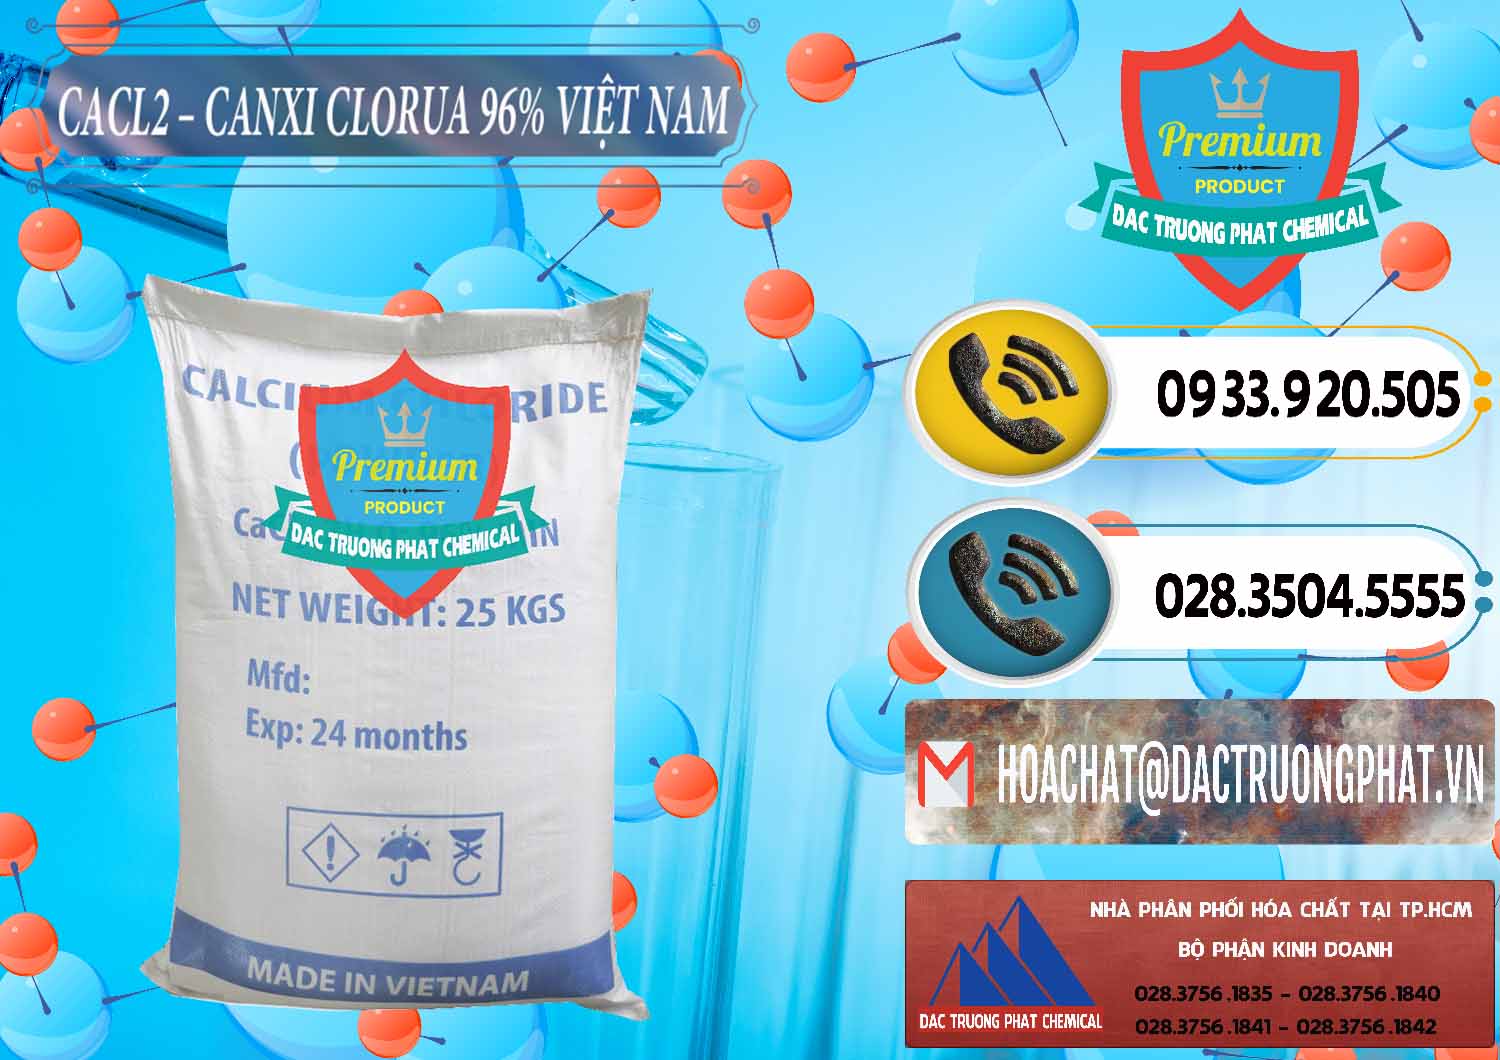 Phân phối ( bán ) CaCl2 – Canxi Clorua 96% Việt Nam - 0236 - Đơn vị kinh doanh và cung cấp hóa chất tại TP.HCM - hoachatdetnhuom.vn